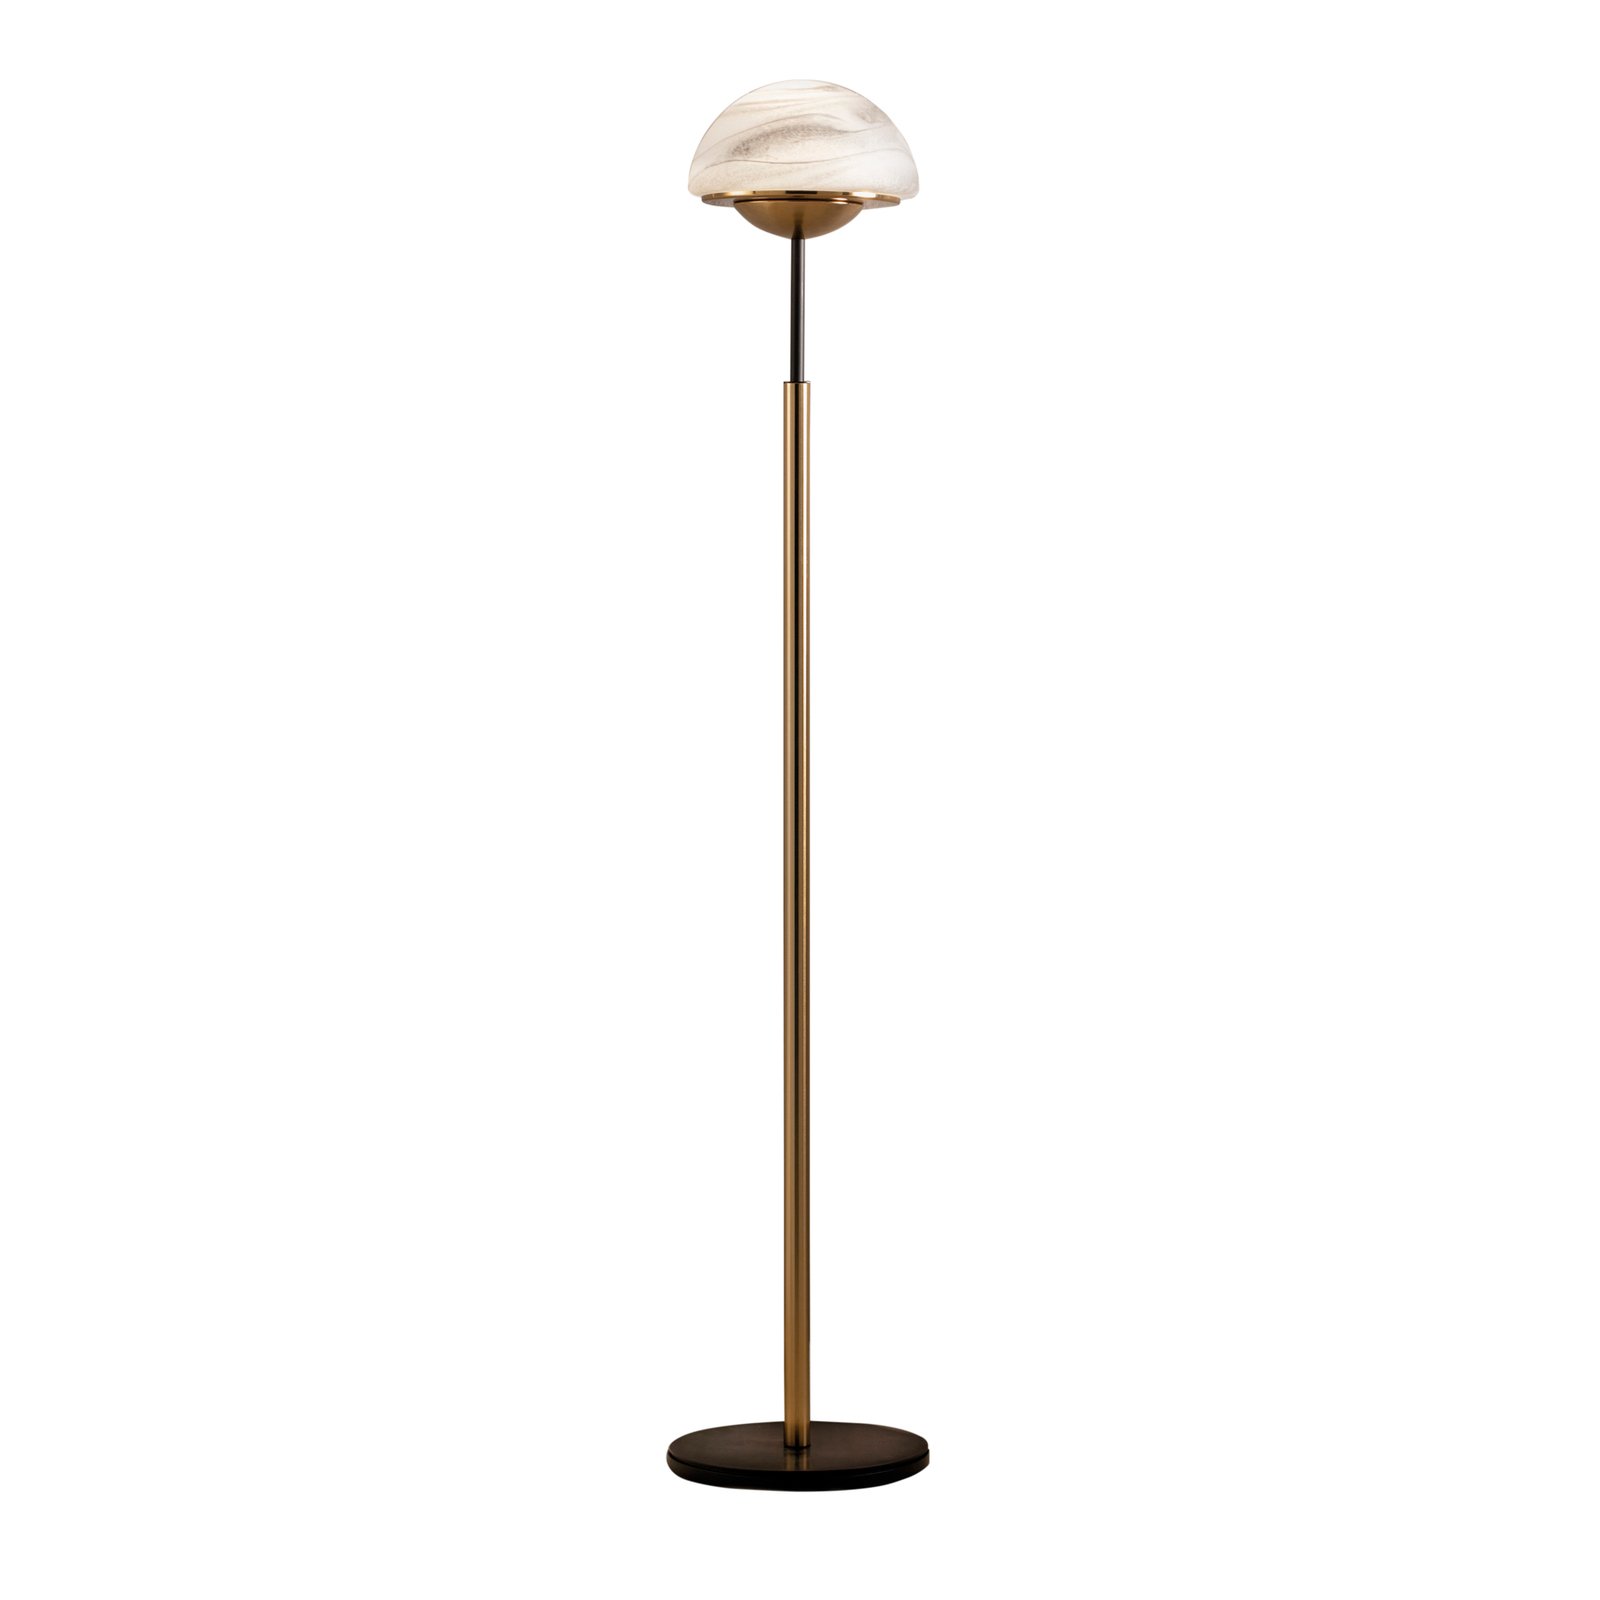 Moon floor lamp, Murano glass, alabaster